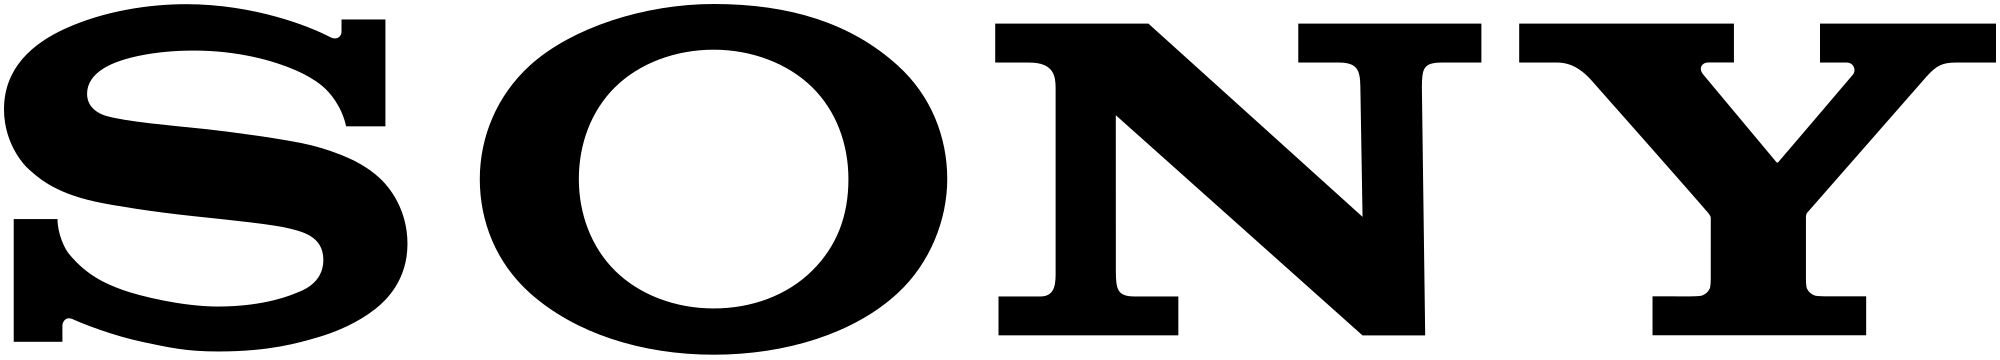 logo PNG.